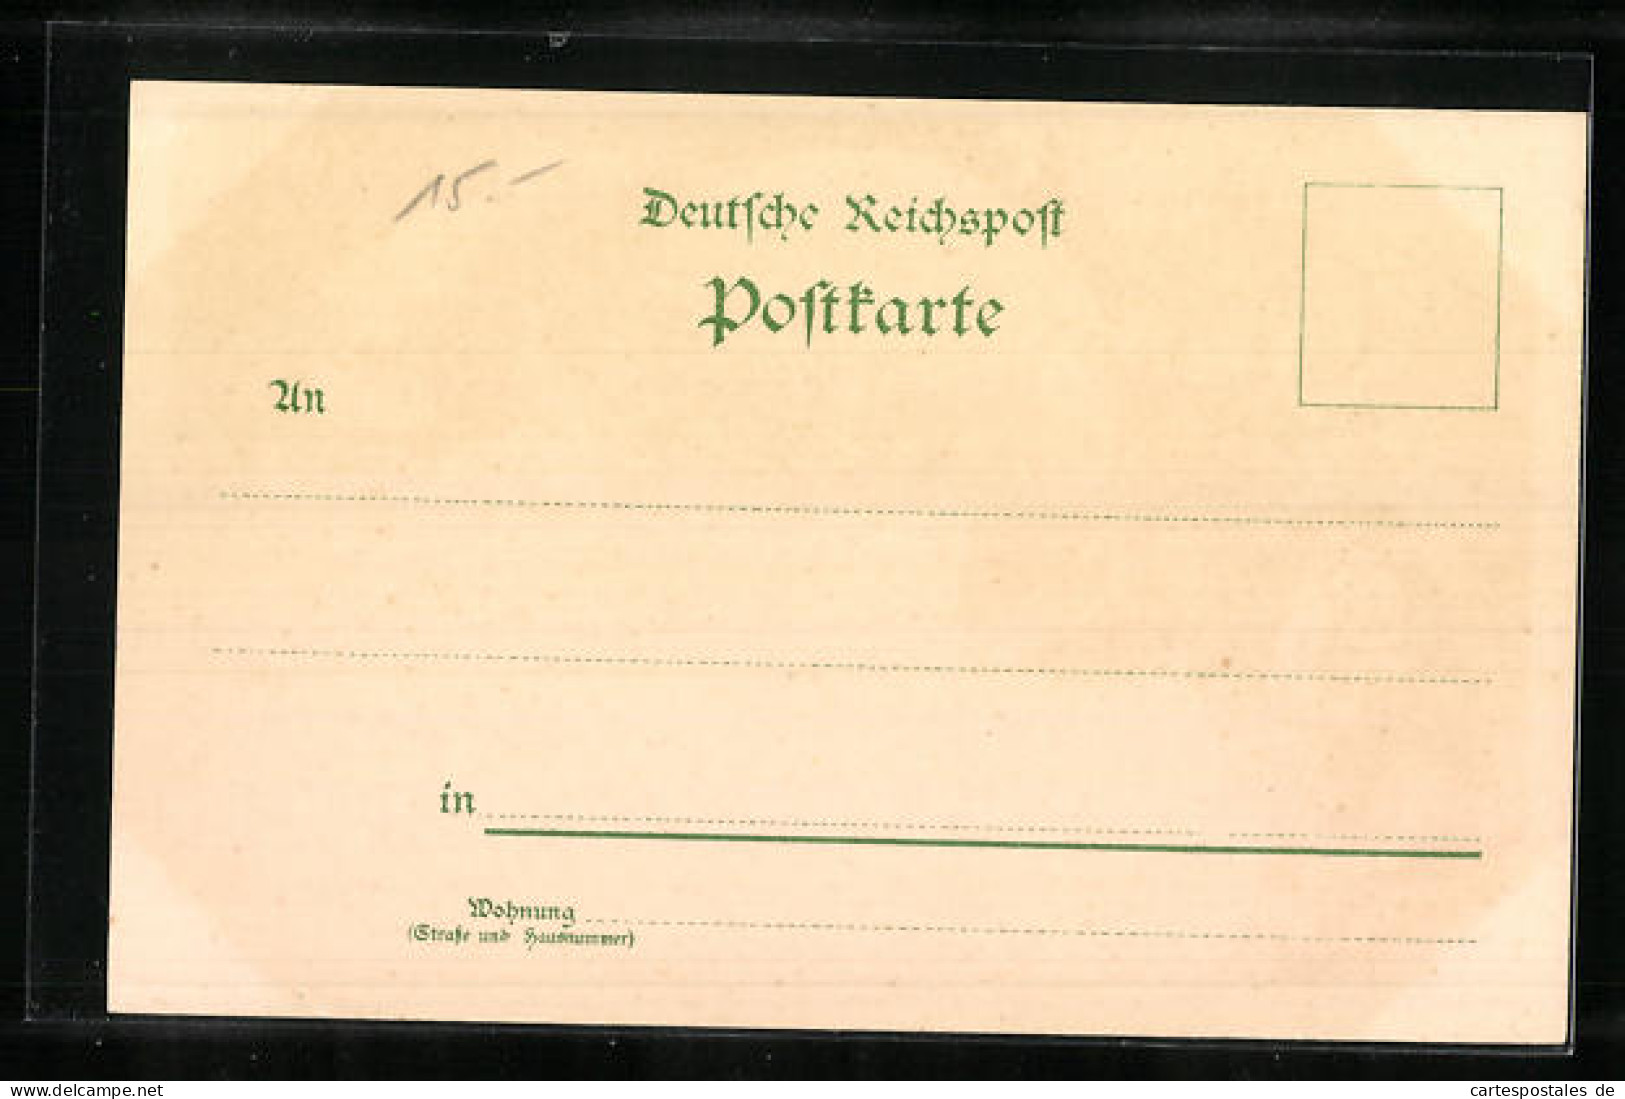 Lithographie Leipzig, Sächsisch-Thüringische Industrie- U. Gewerbe-Ausstellung 1897, Tiroler Bergfahrt, Ortspartie  - Ausstellungen